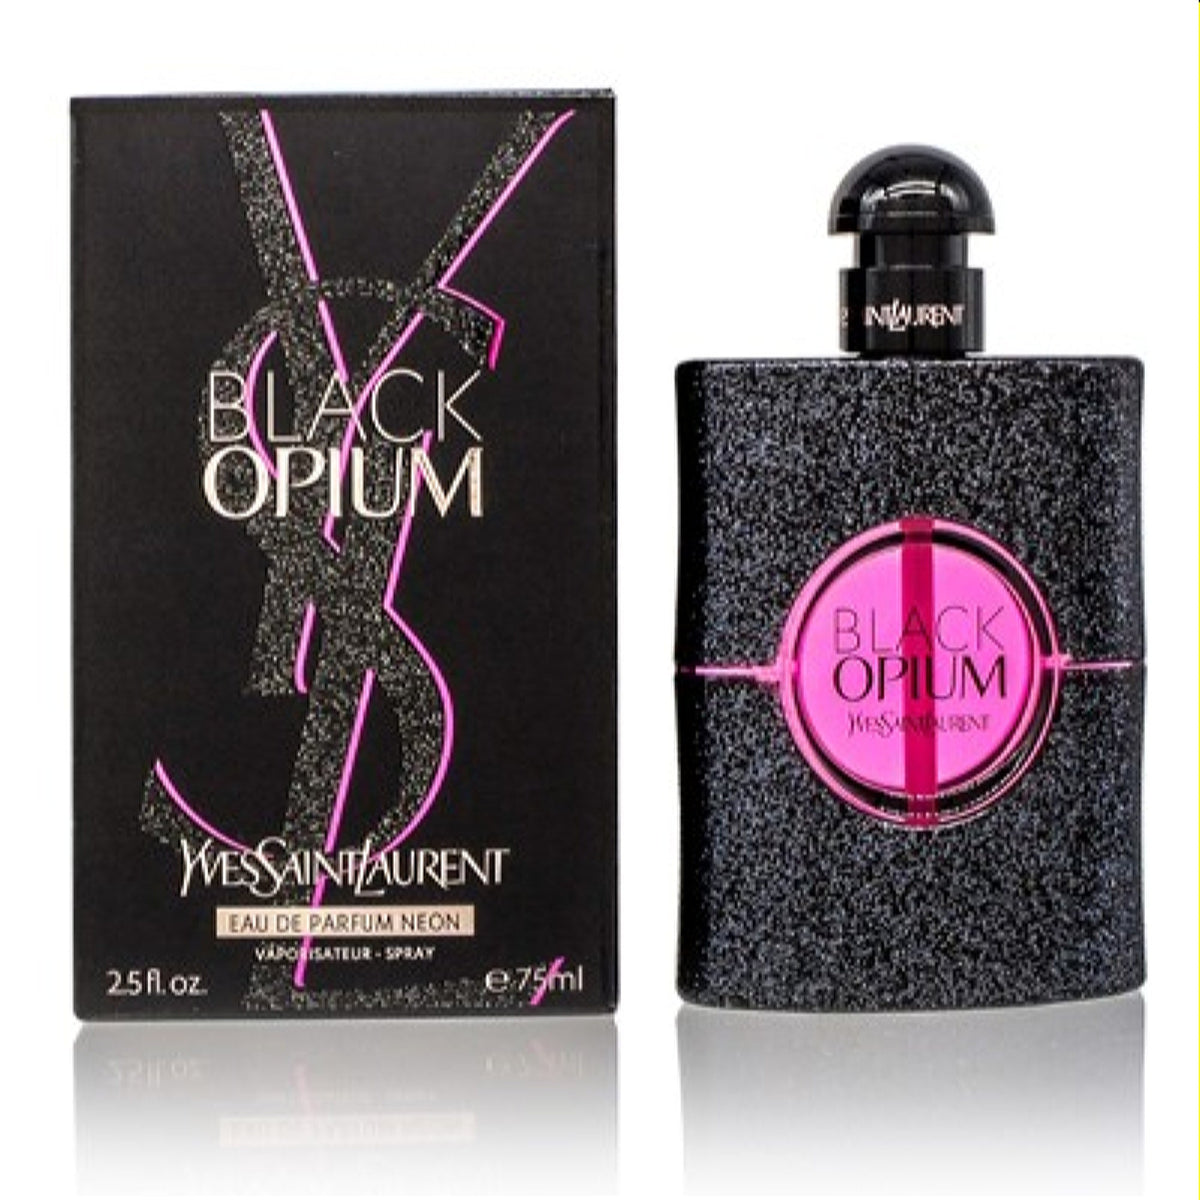 Black Opium Ysl Edp Spray 2.5 Oz (75 Ml) For Women   